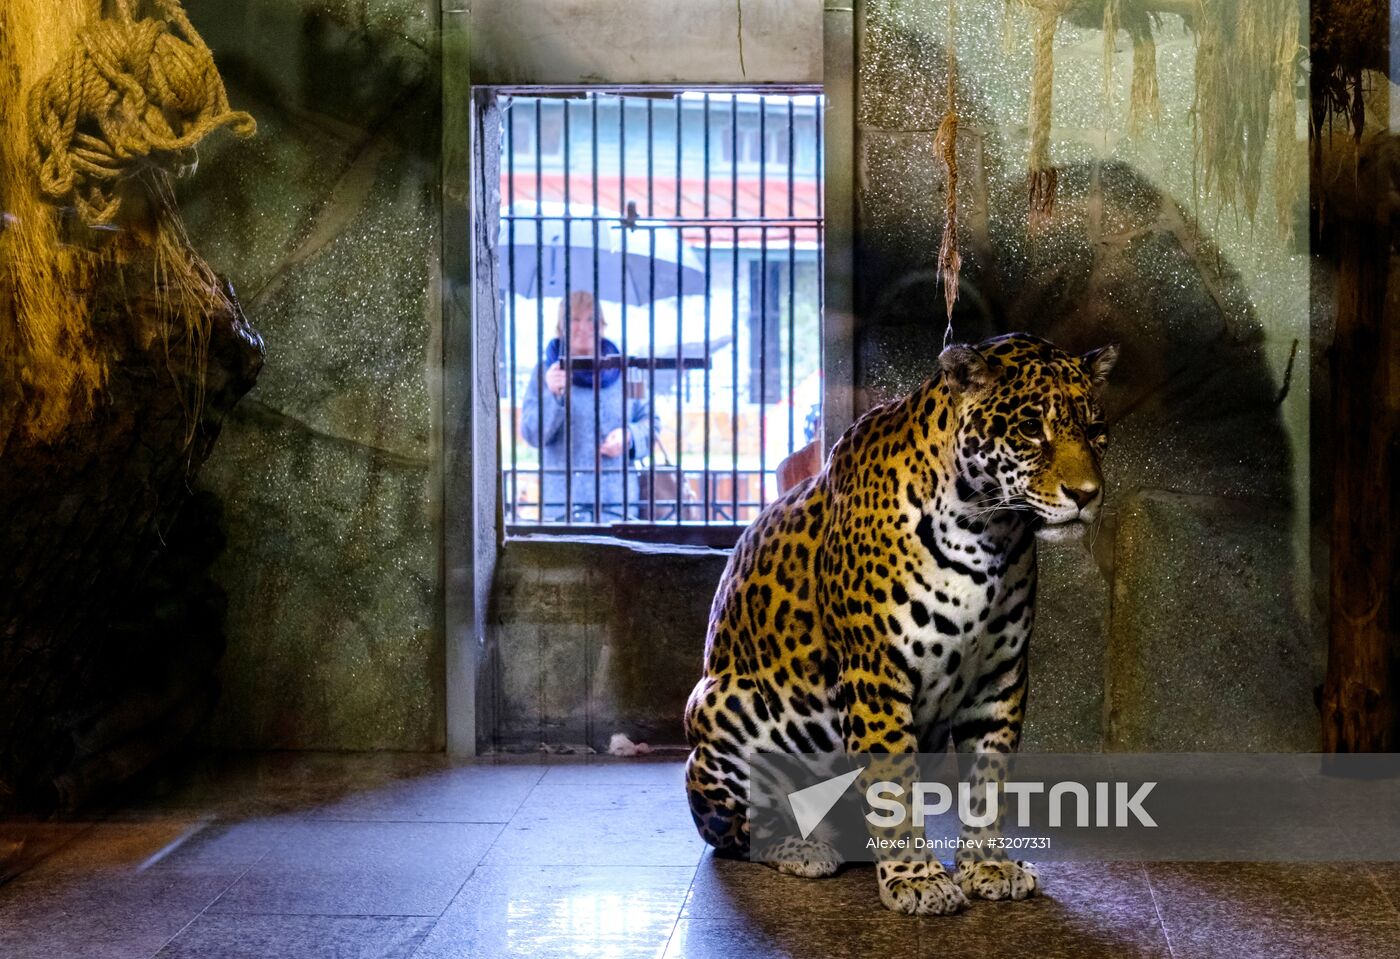 St. Petersburg Zoo